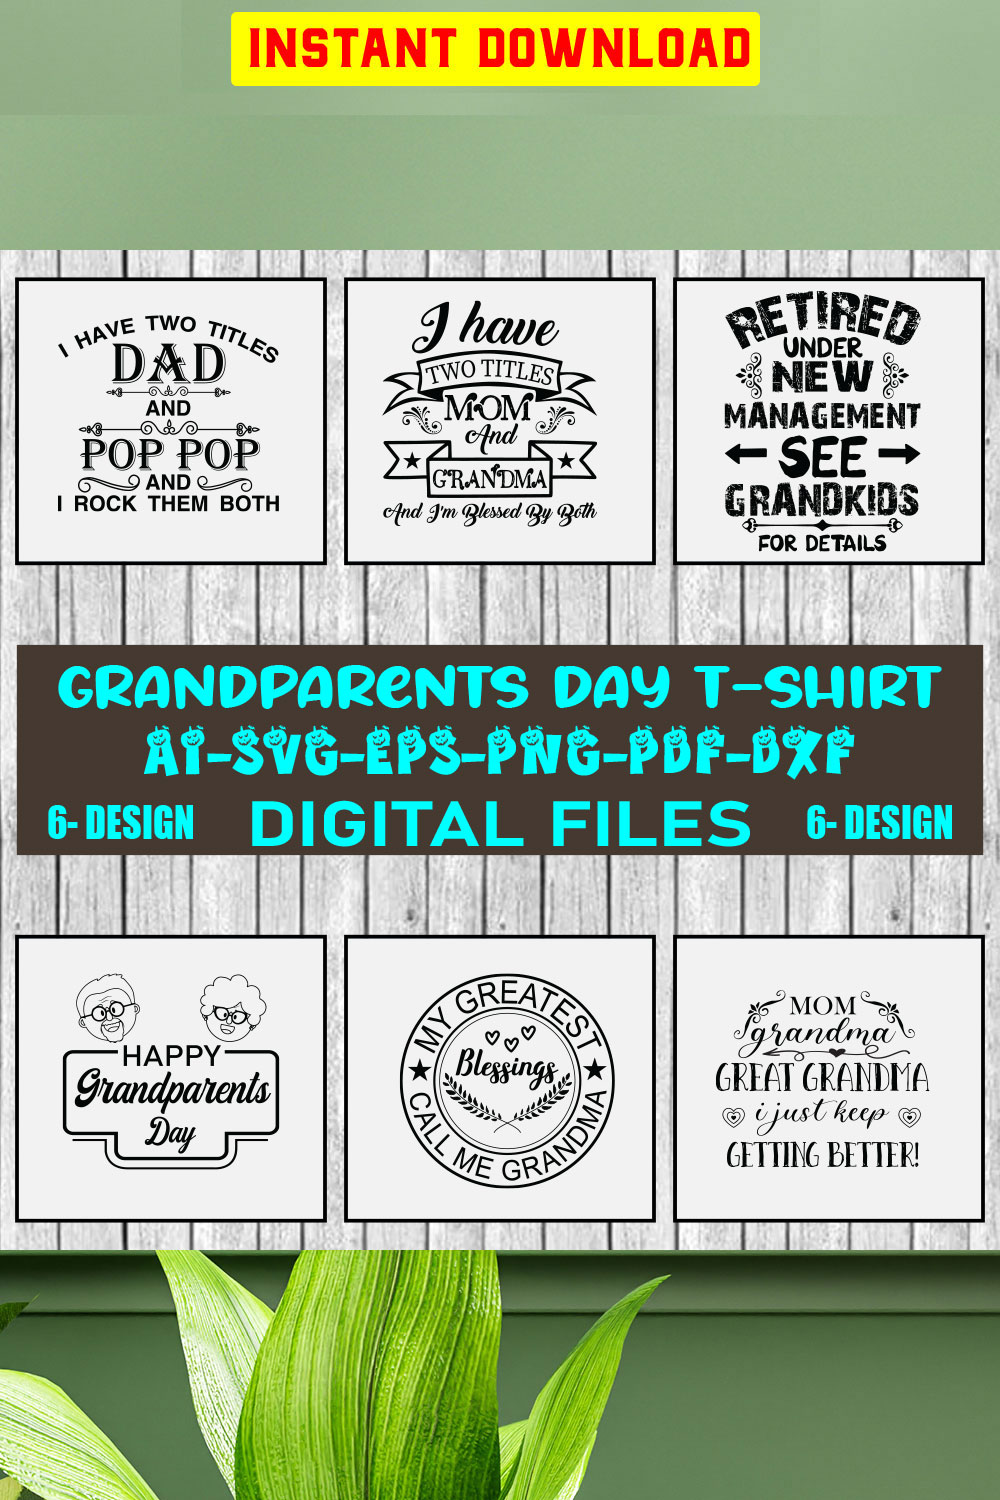 Grandparents Day T-shirt Design Bundle Vol-2 pinterest preview image.